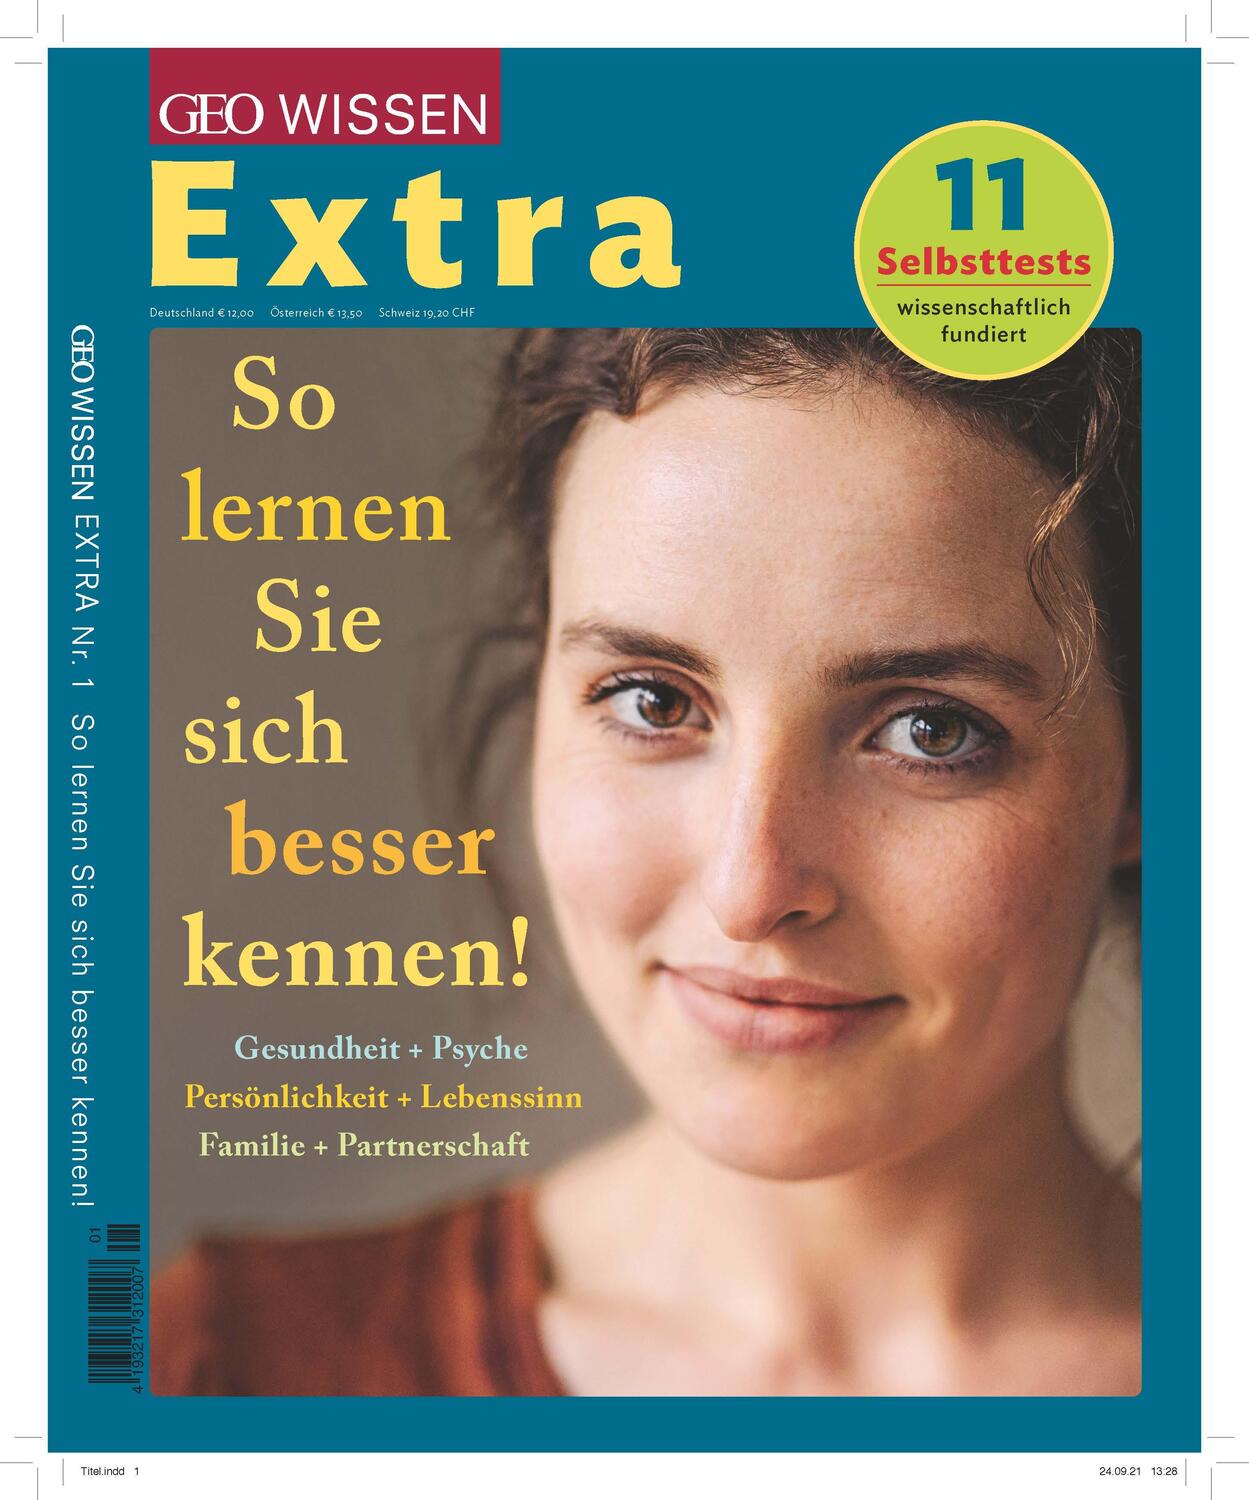 GEO Wissen Extra 1/2021 - So lernen Sie sich besser kennen - Schröder, Jens